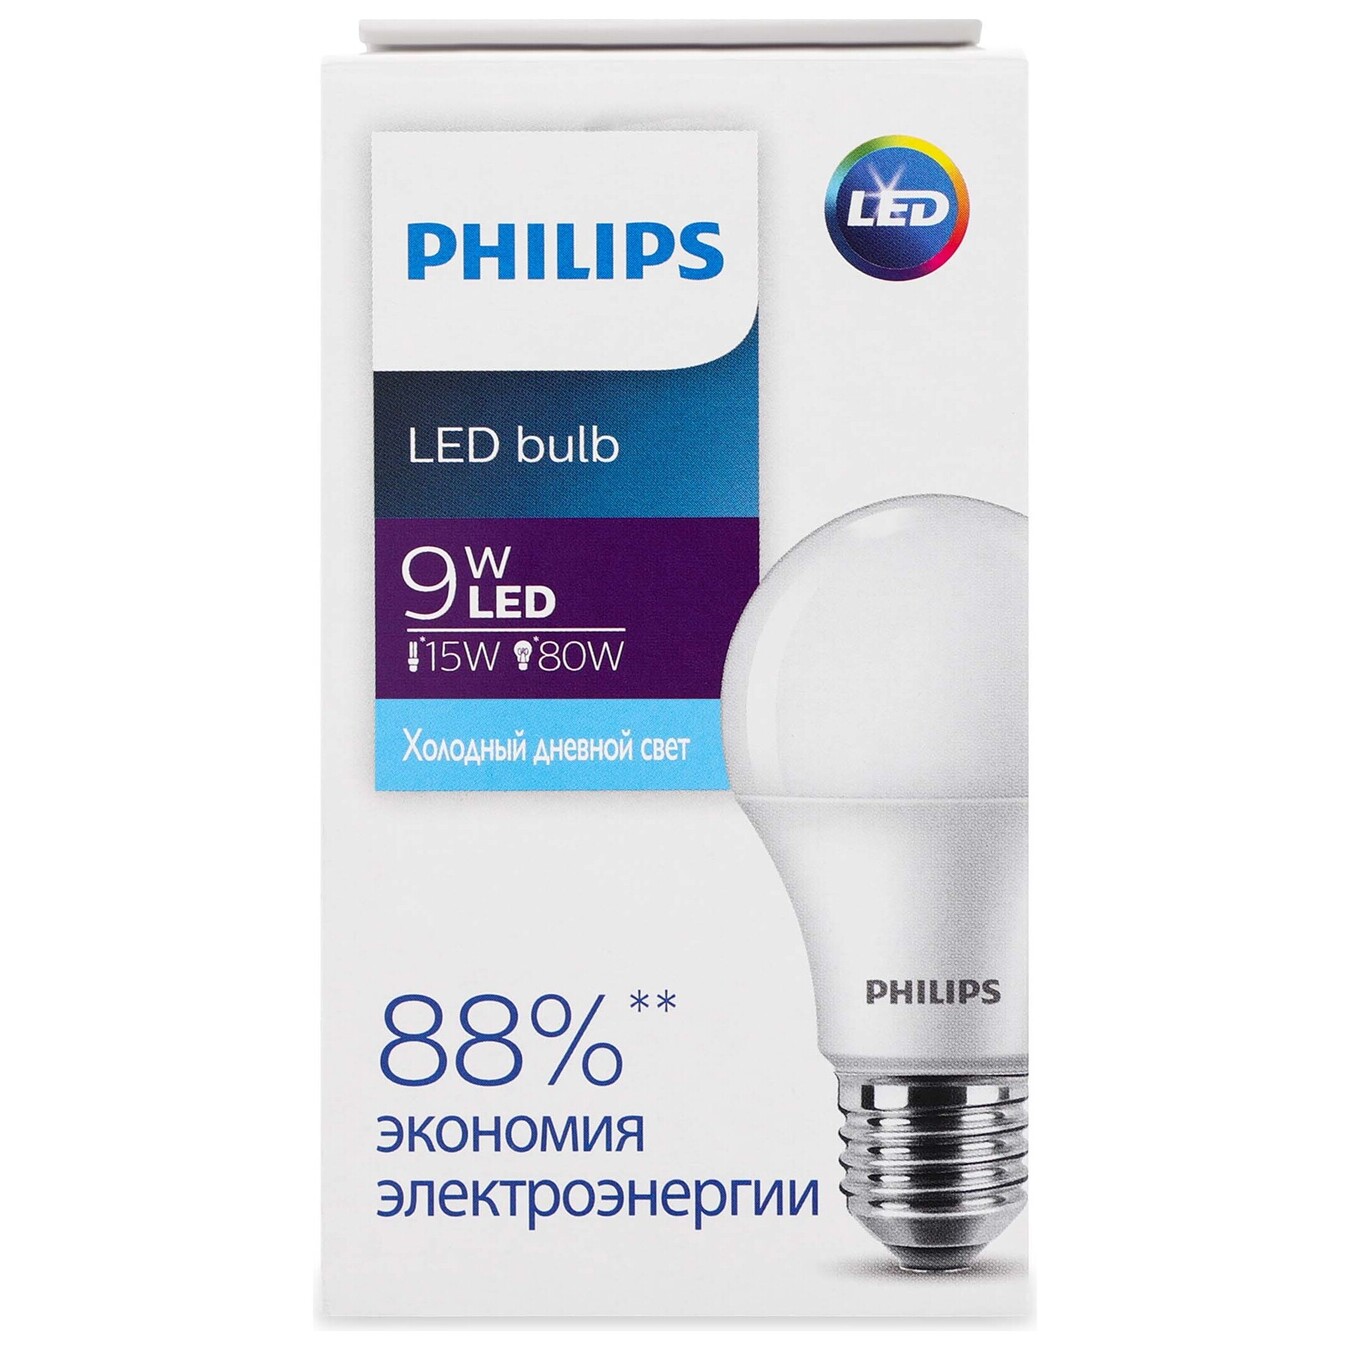 LED lamp Ecohome LED Bulb 9W E27 6500K 1PF/20RCA